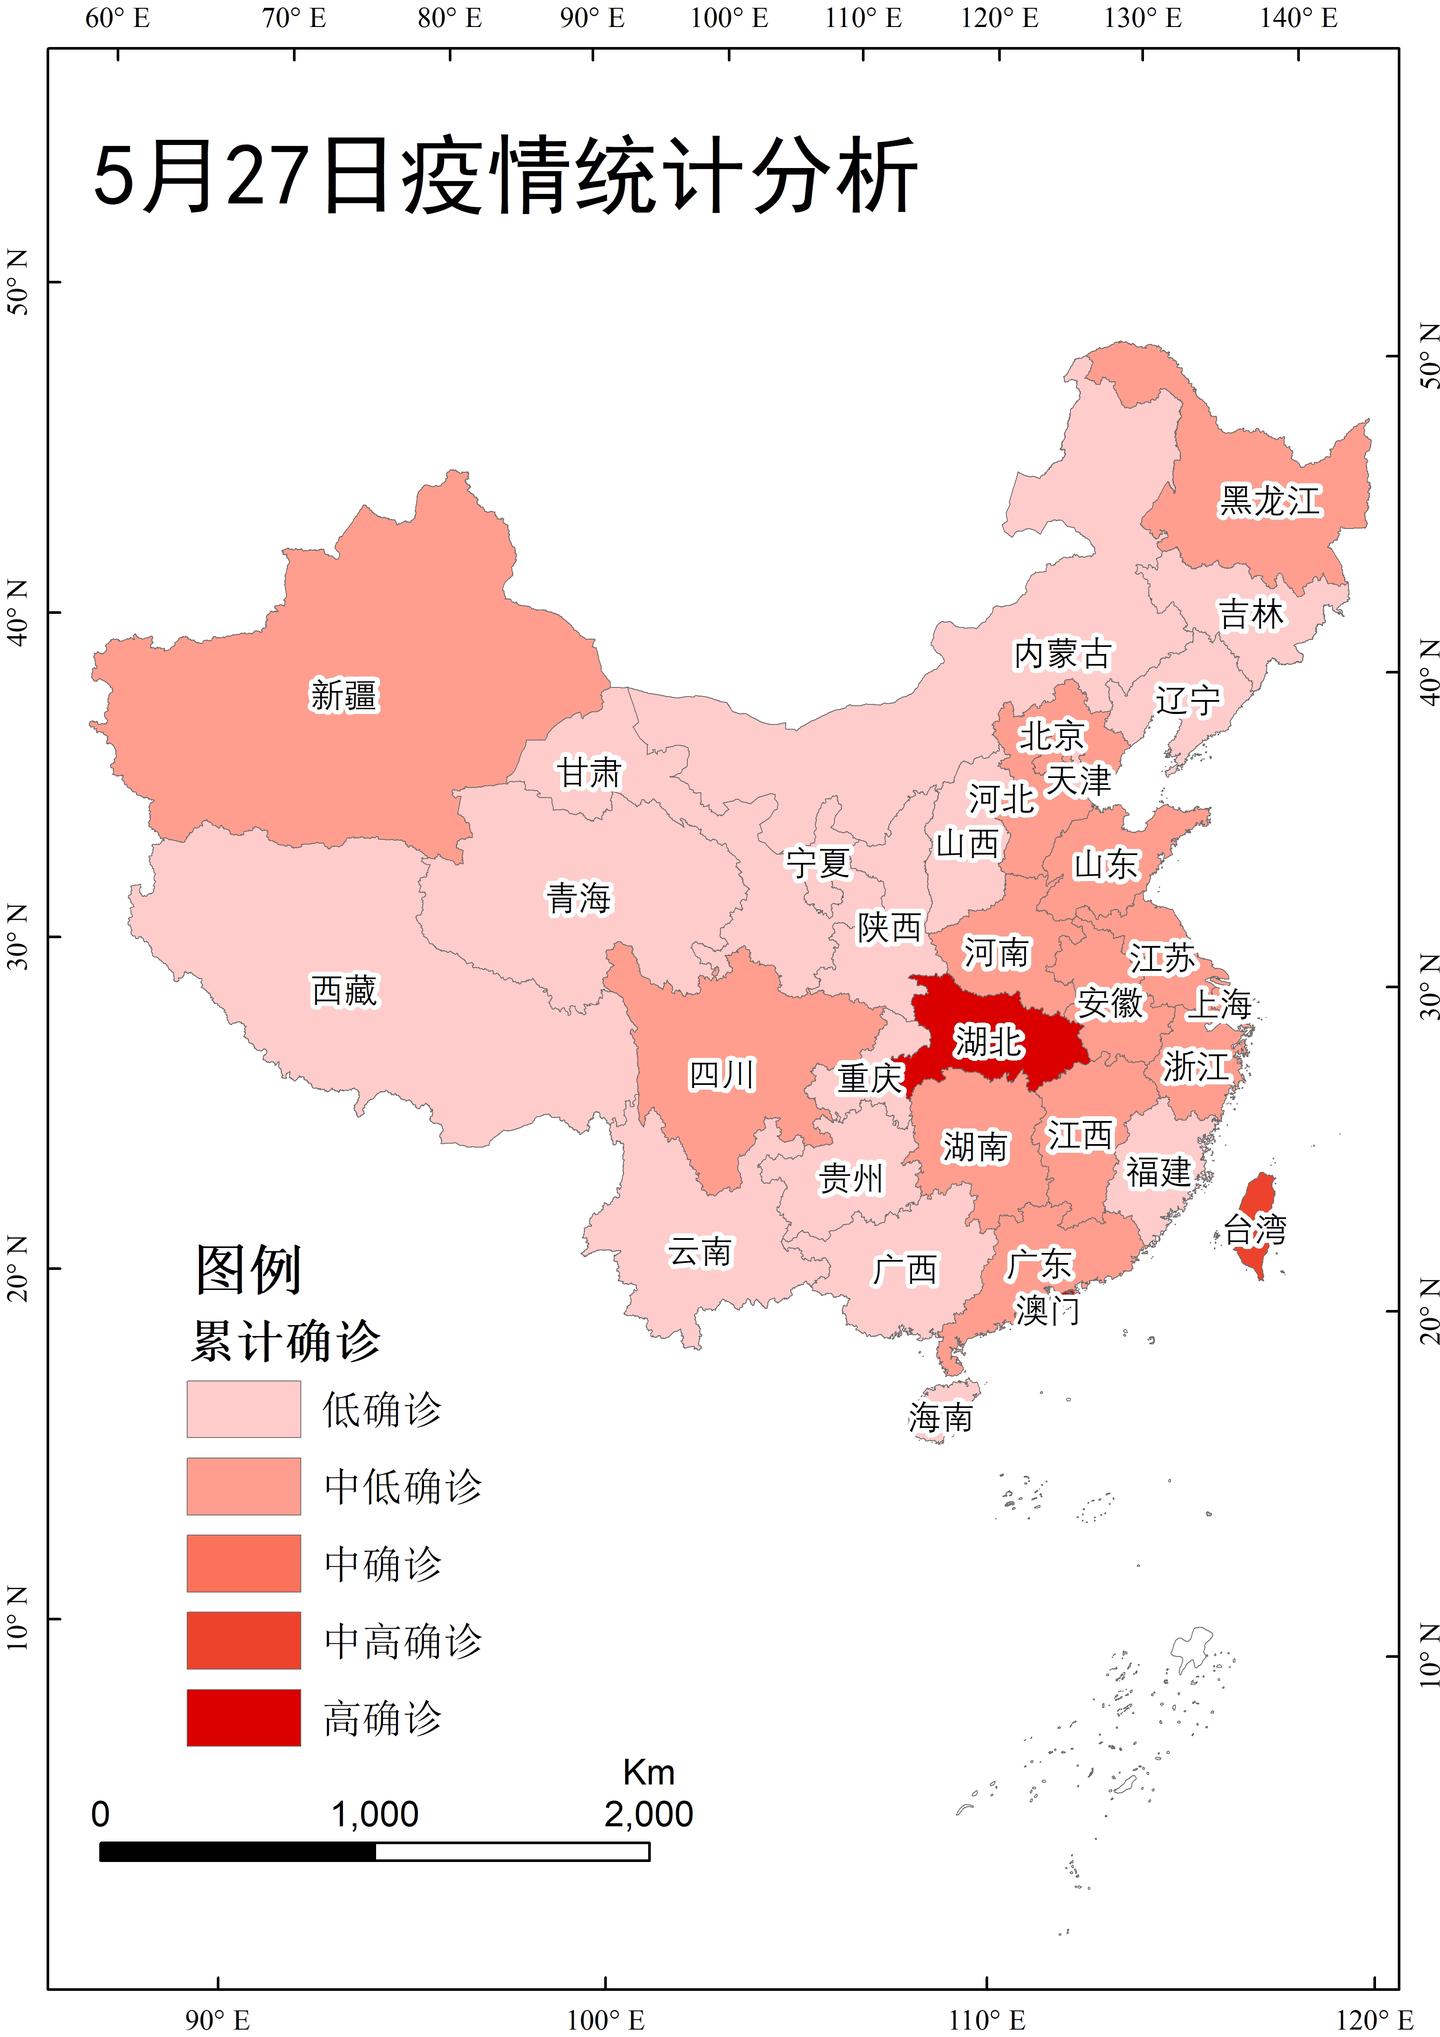 arcgis教程742021527日中国疫情统计状况分析